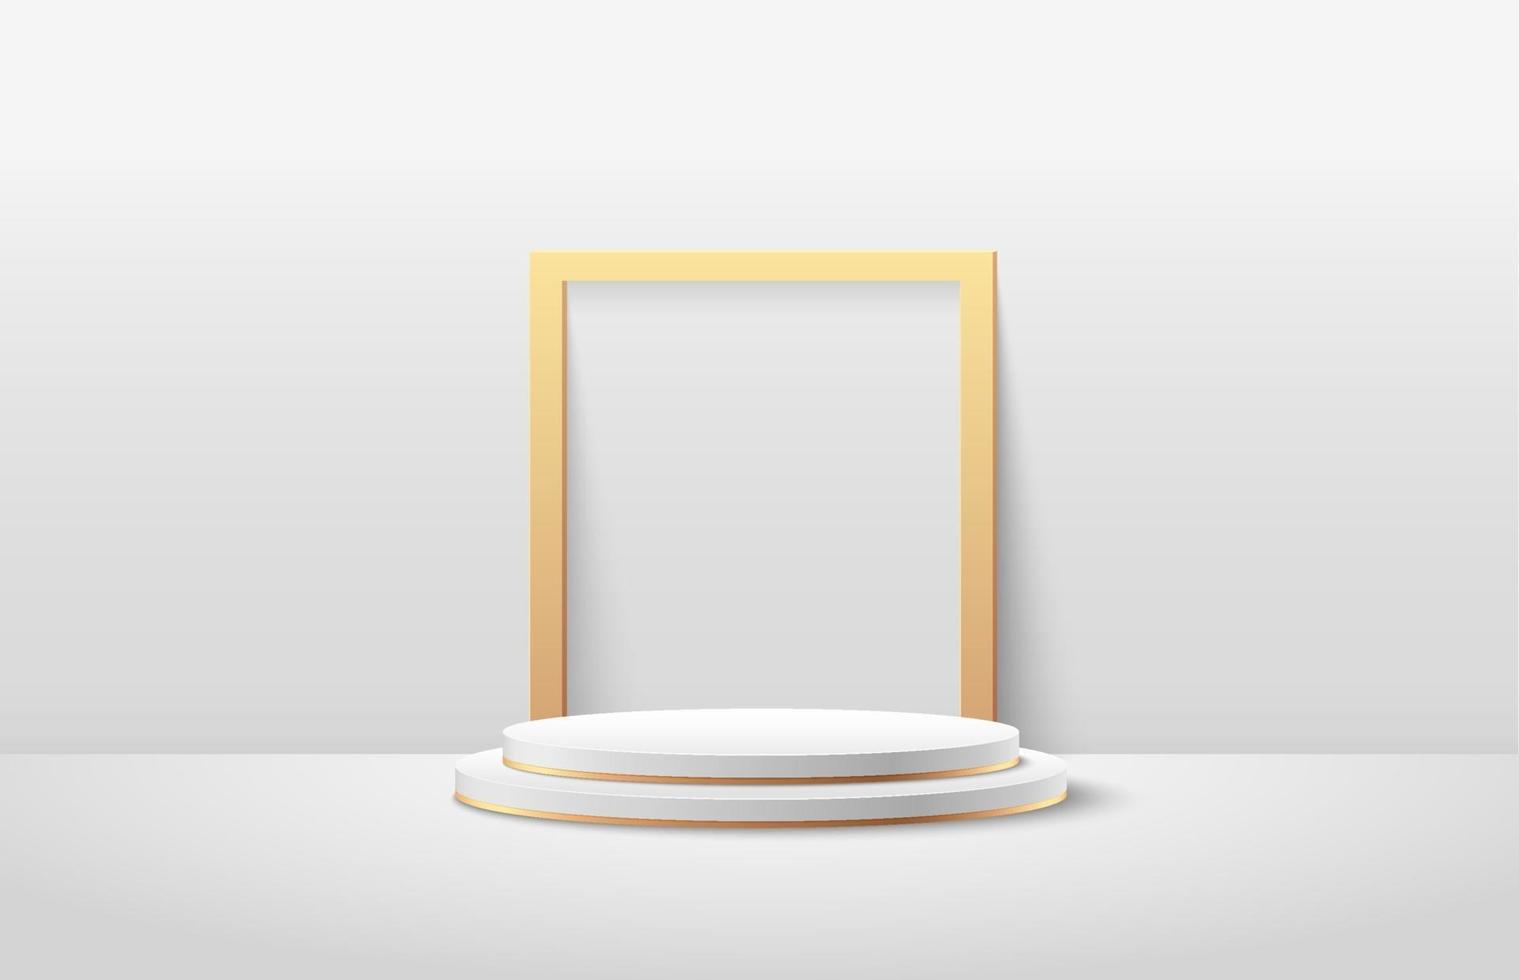 affichage rond abstrait pour produit sur site Web dans un style moderne. rendu de fond avec podium et scène de mur de texture minimal blanc, or, couleur blanche de forme géométrique de rendu 3d de luxe. vecteur eps10